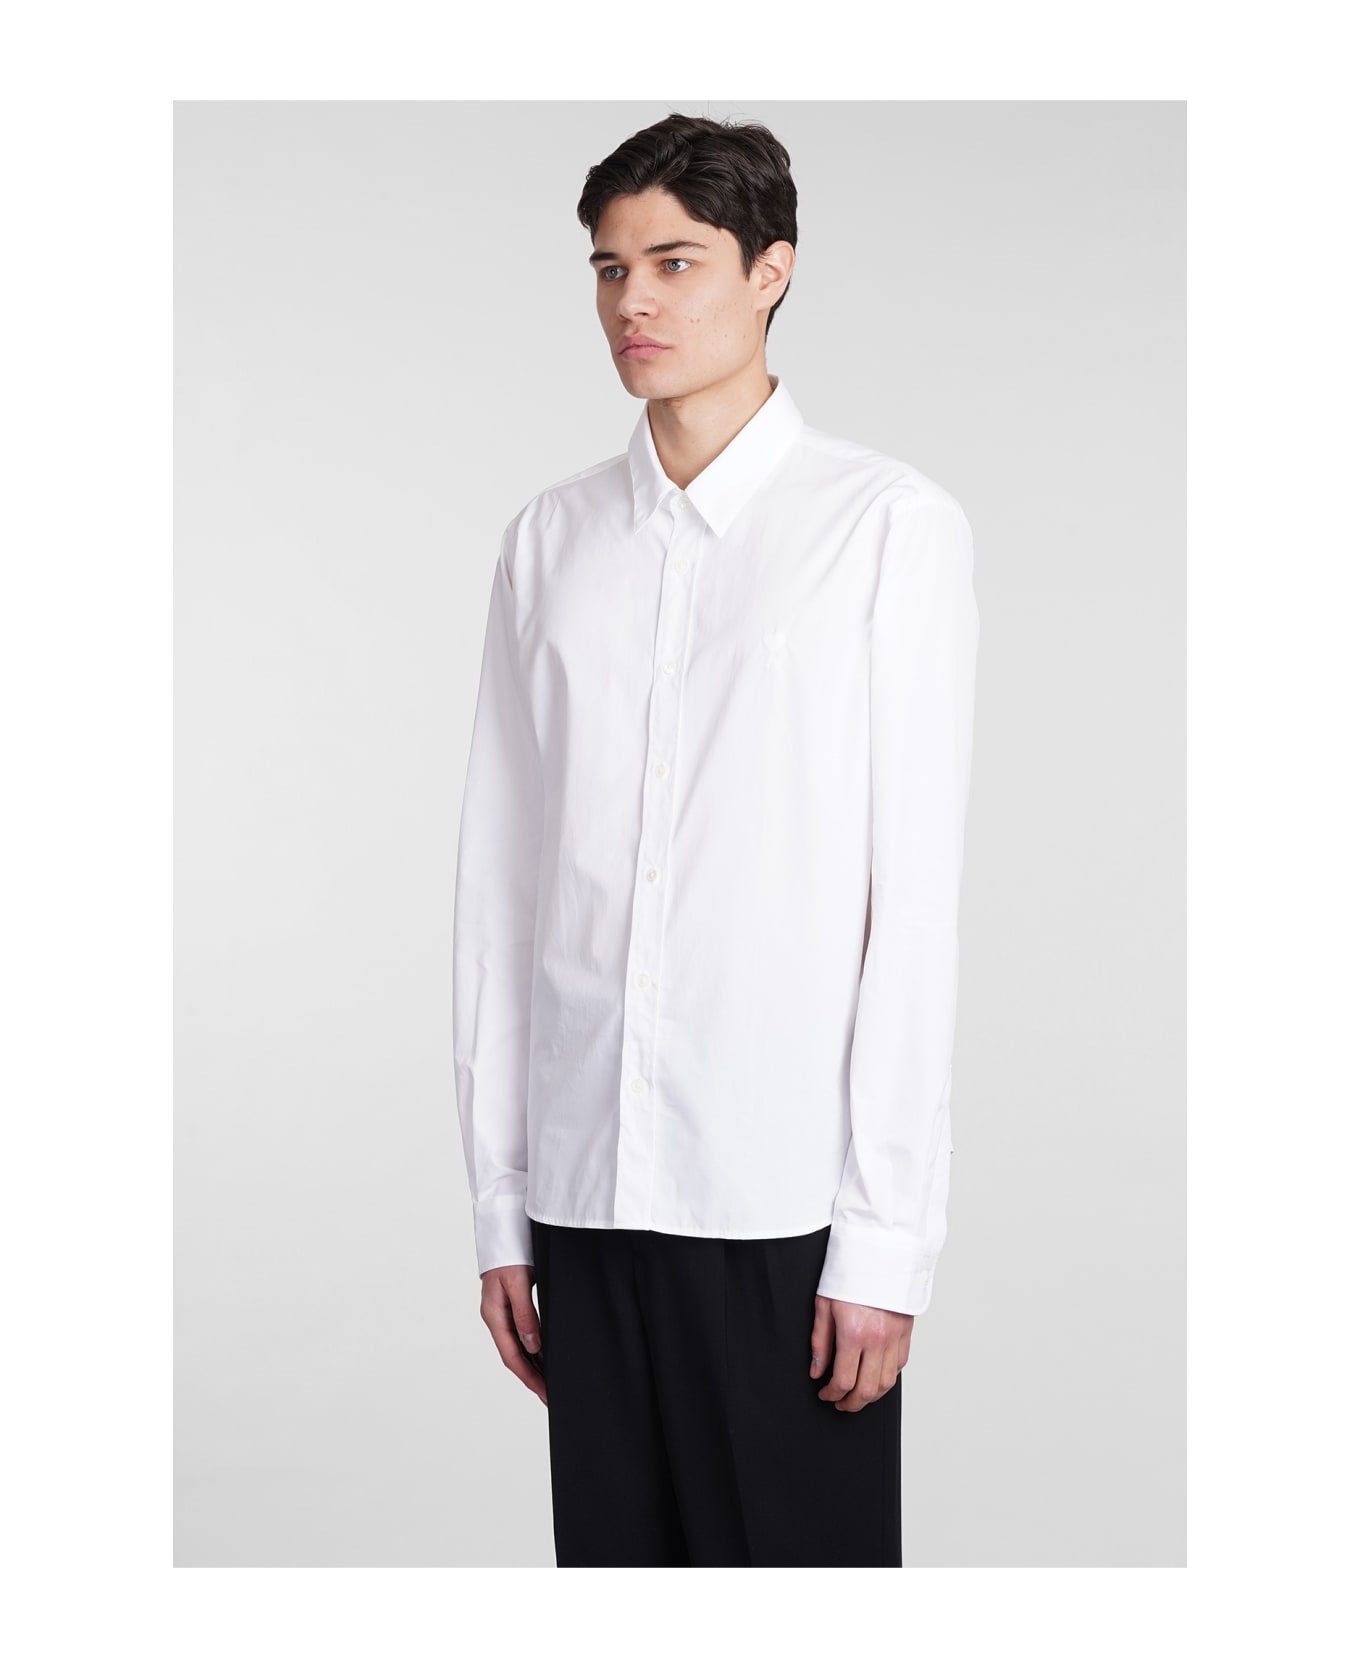 Ami Alexandre Mattiussi Shirt In White Cotton - white